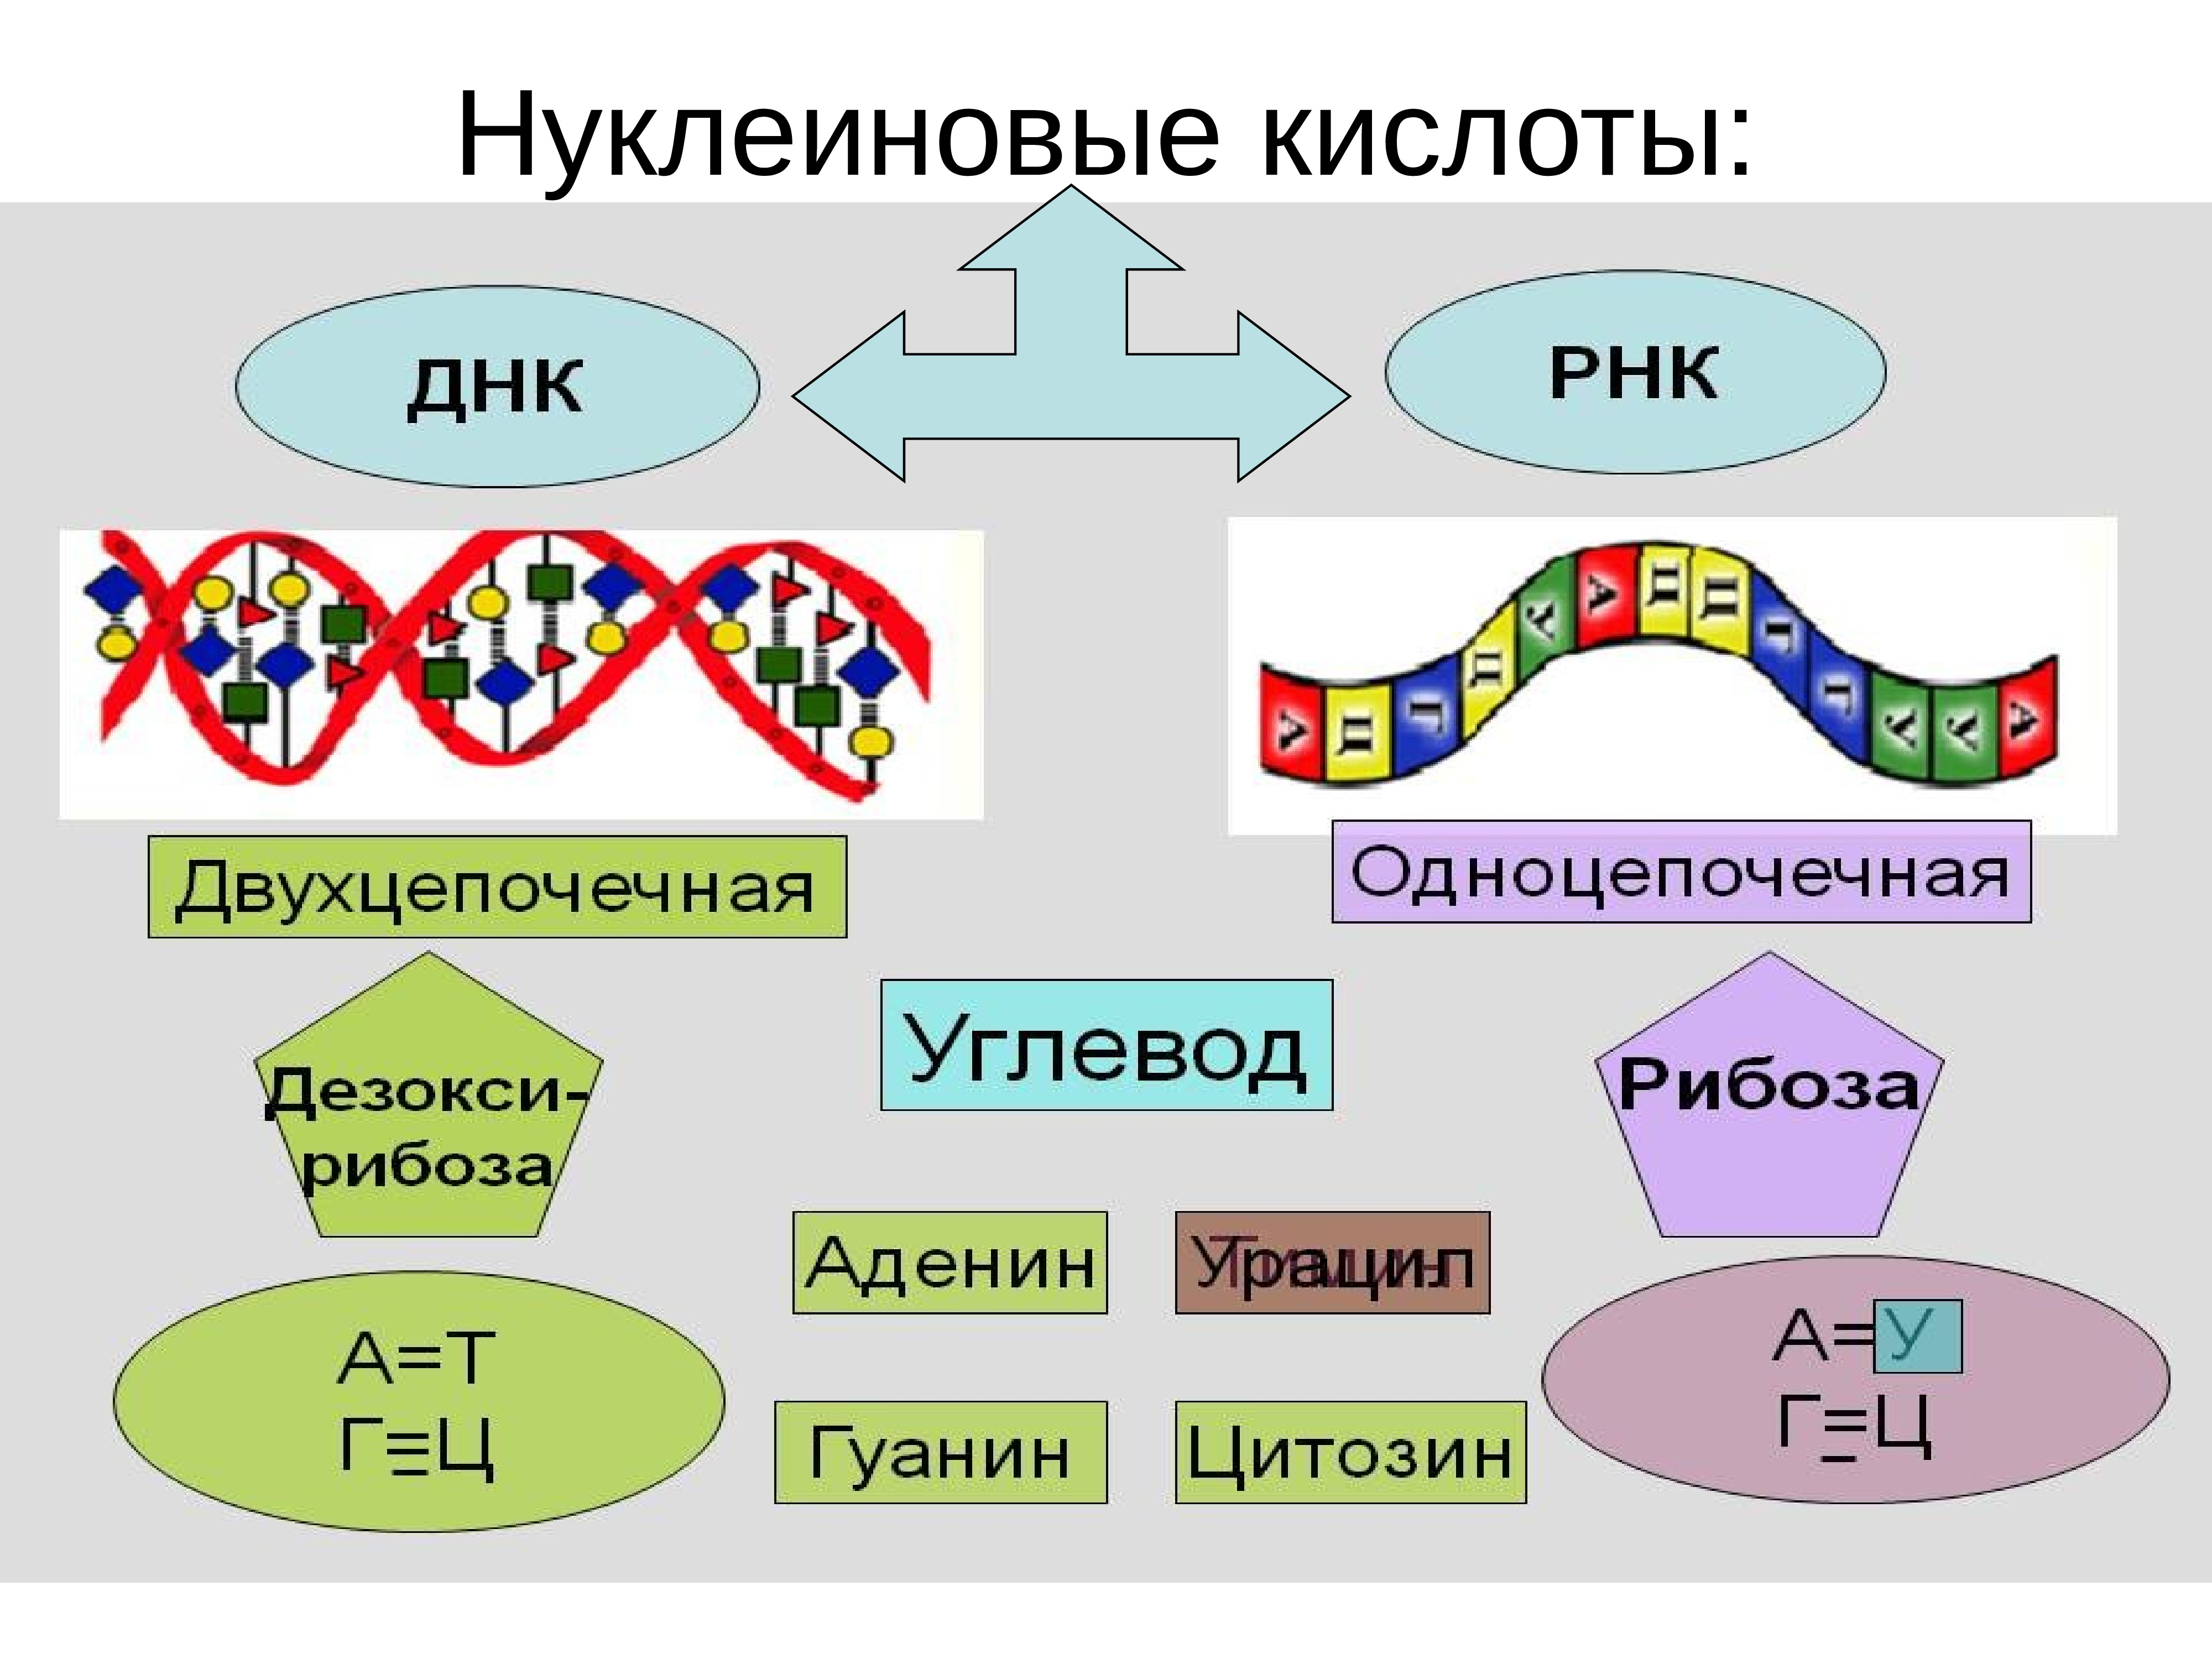 Нуклеиновые части кислоты. Нуклеиновые кислоты ДНК И РНК. Строение нуклеиновых кислот ДНК И РНК. Строение нуклеиновые кислоты ДНК схема. Нуклеиновая кислота ИРНК.